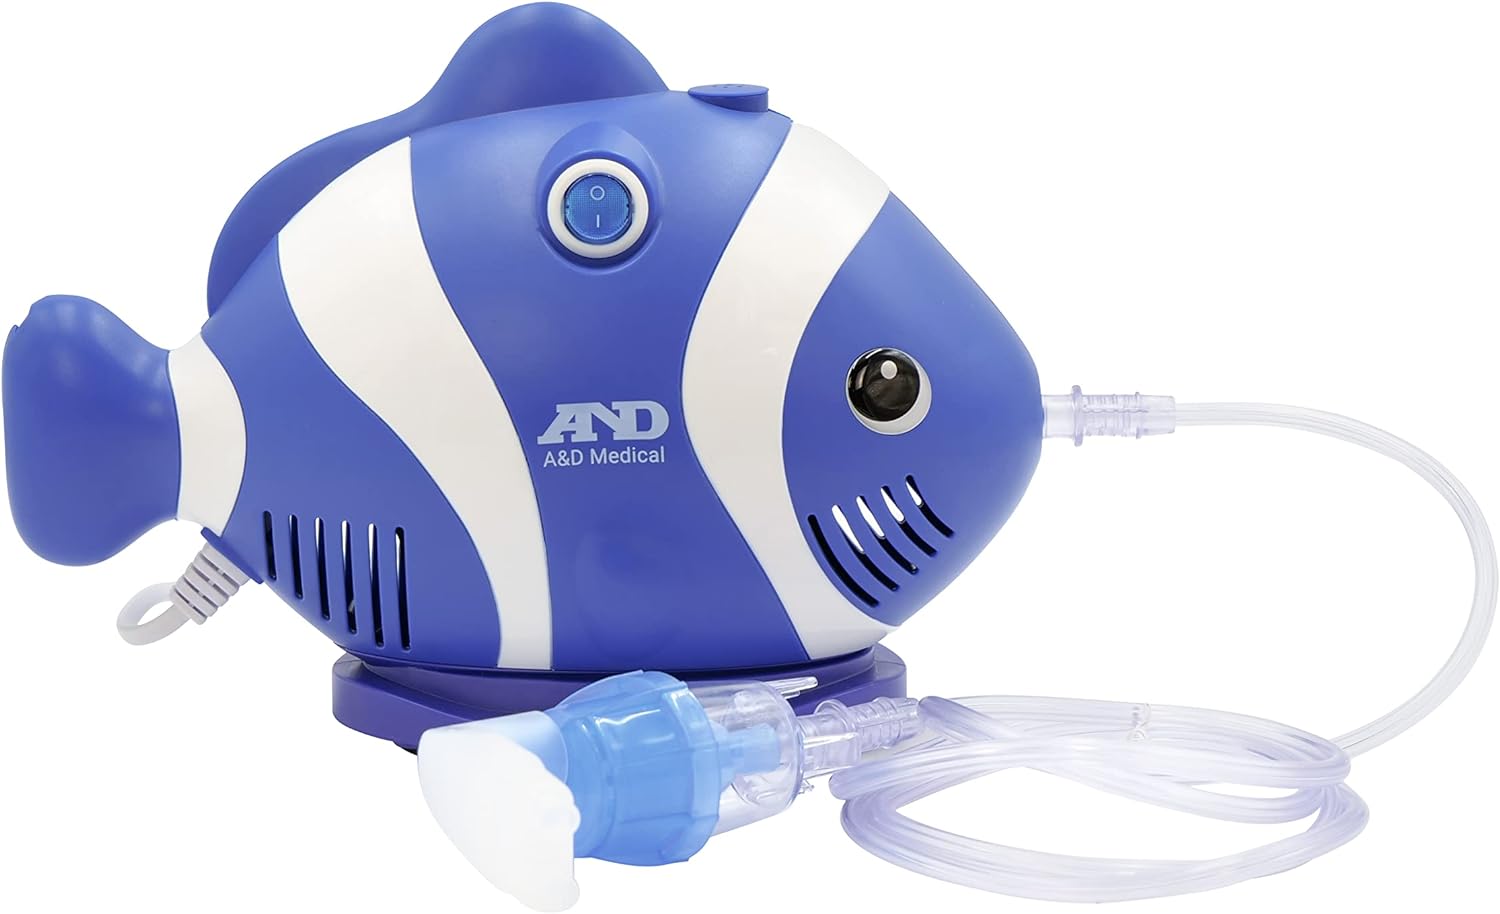 Nébuliseur inhalateur A&D Medical UN-019 à 5€ [Terminé] - Méga